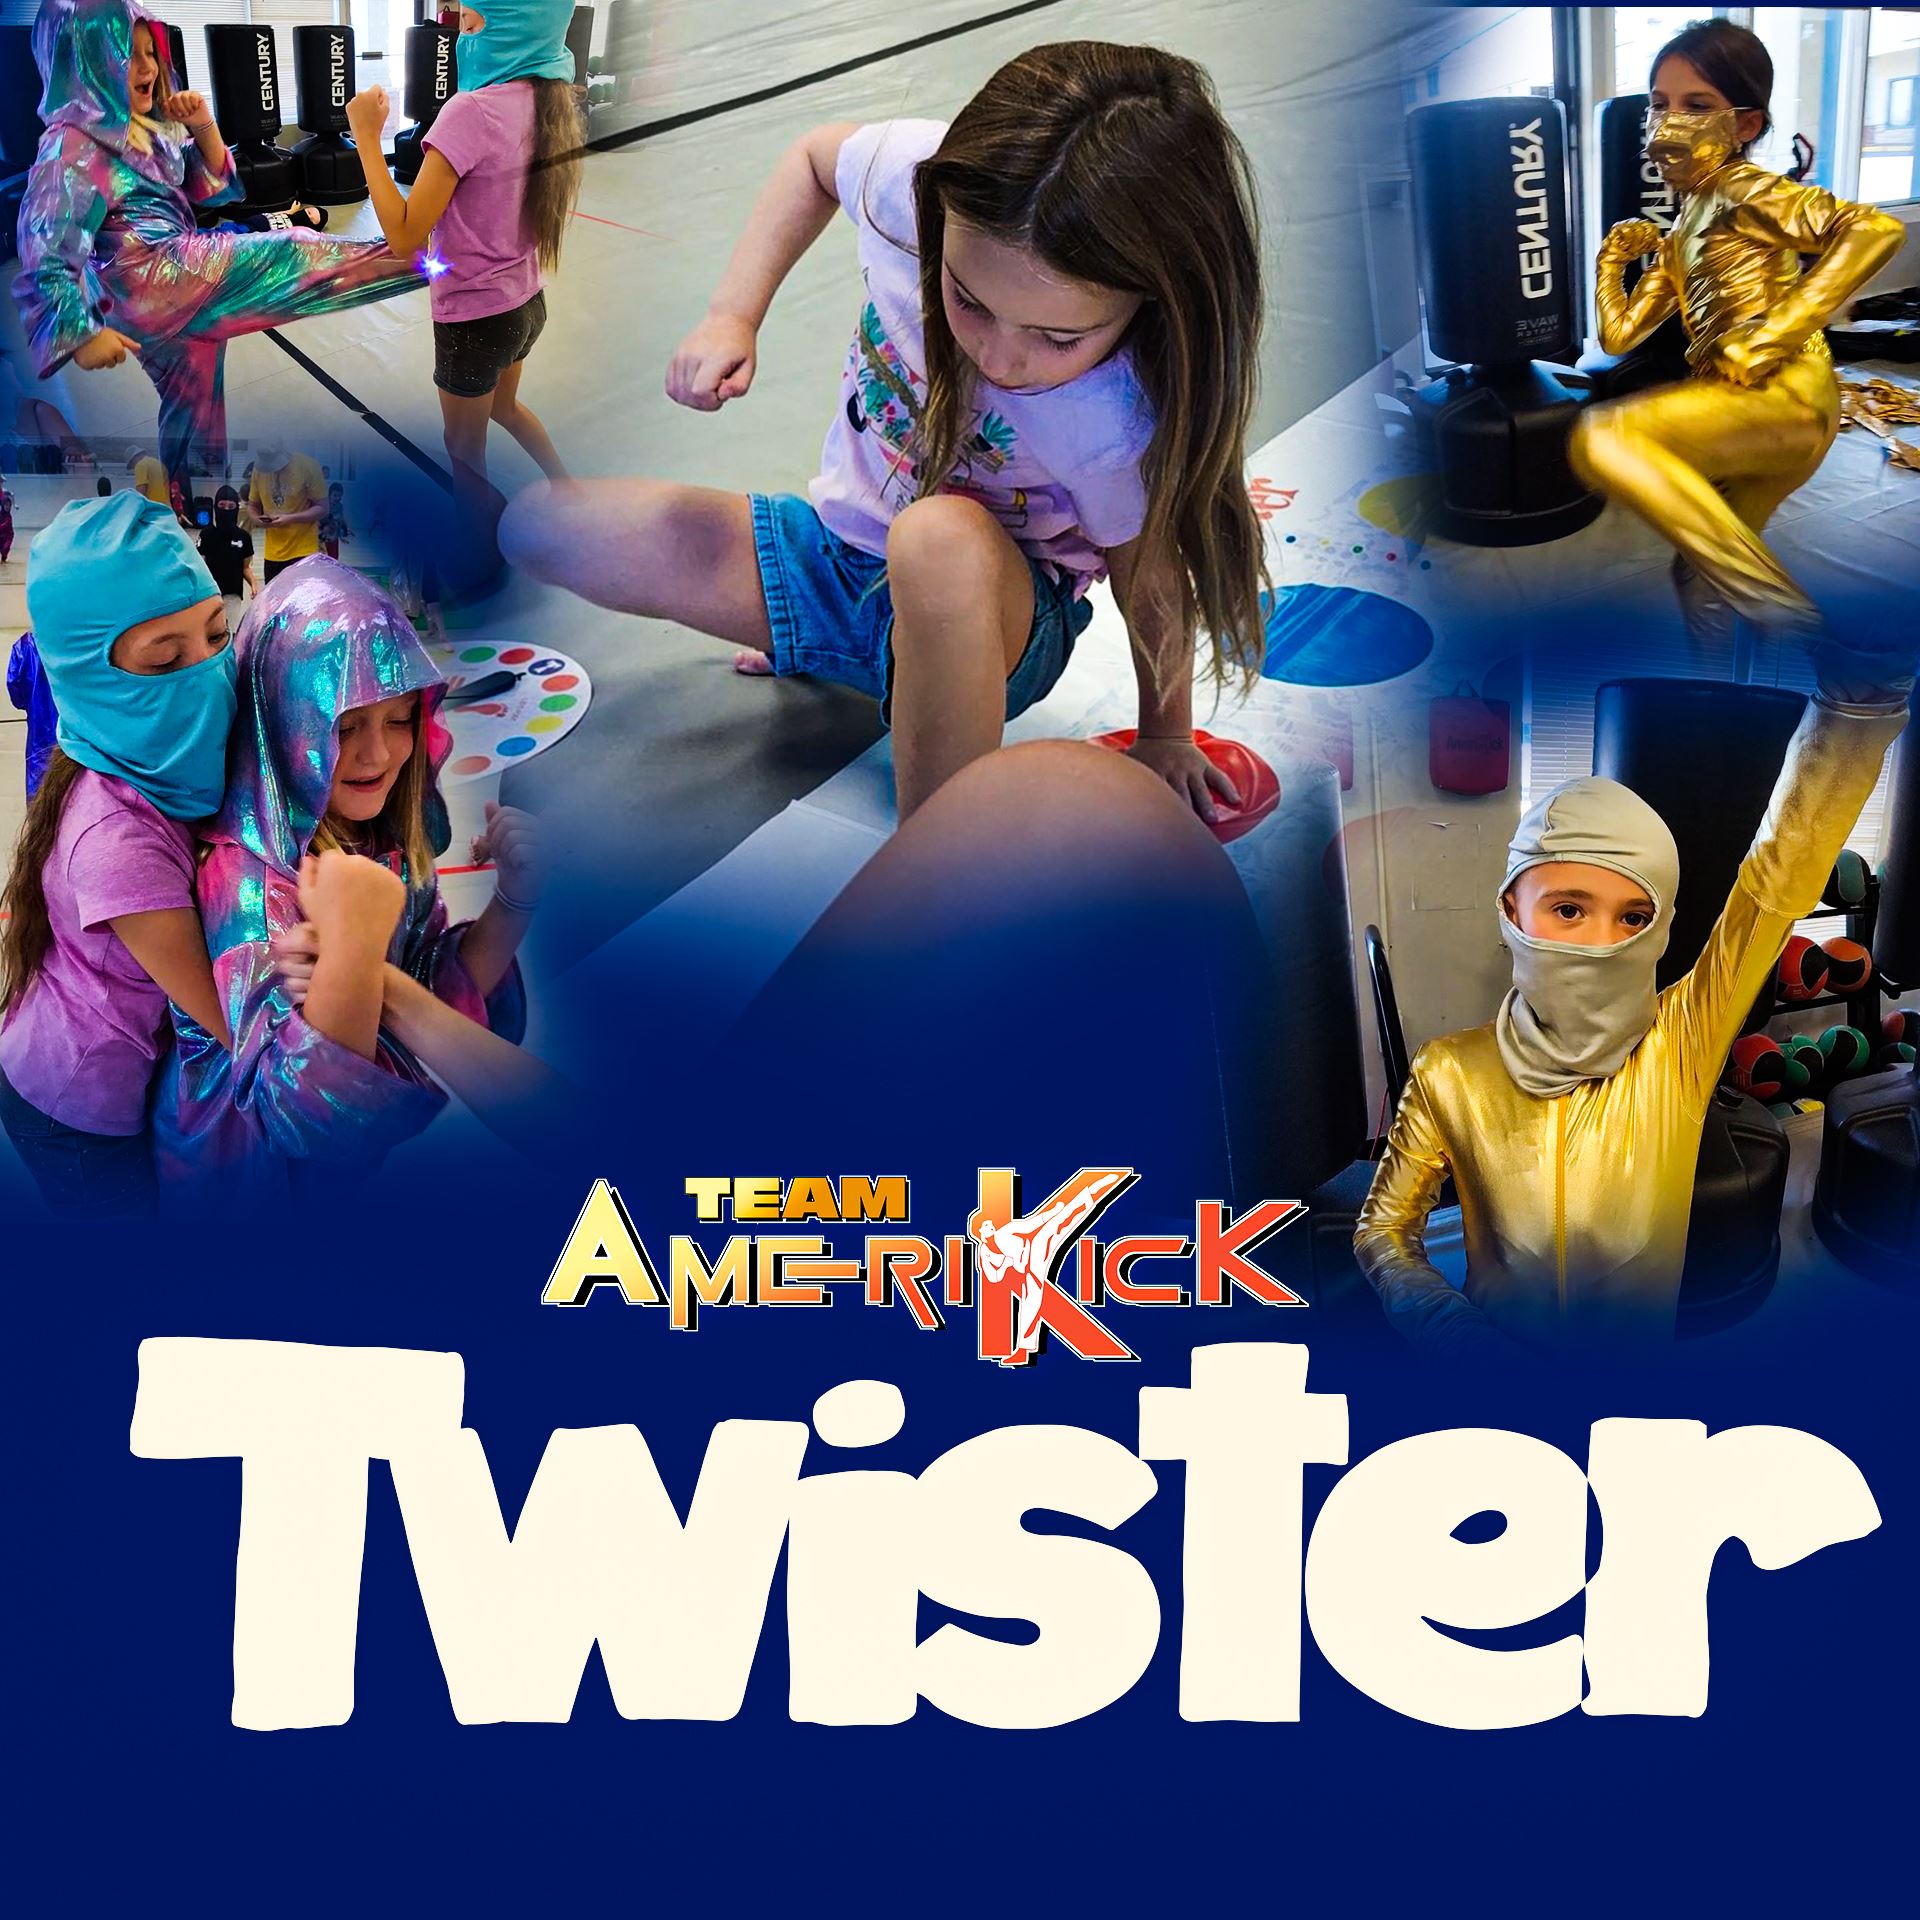 Team Amerikick: Twister